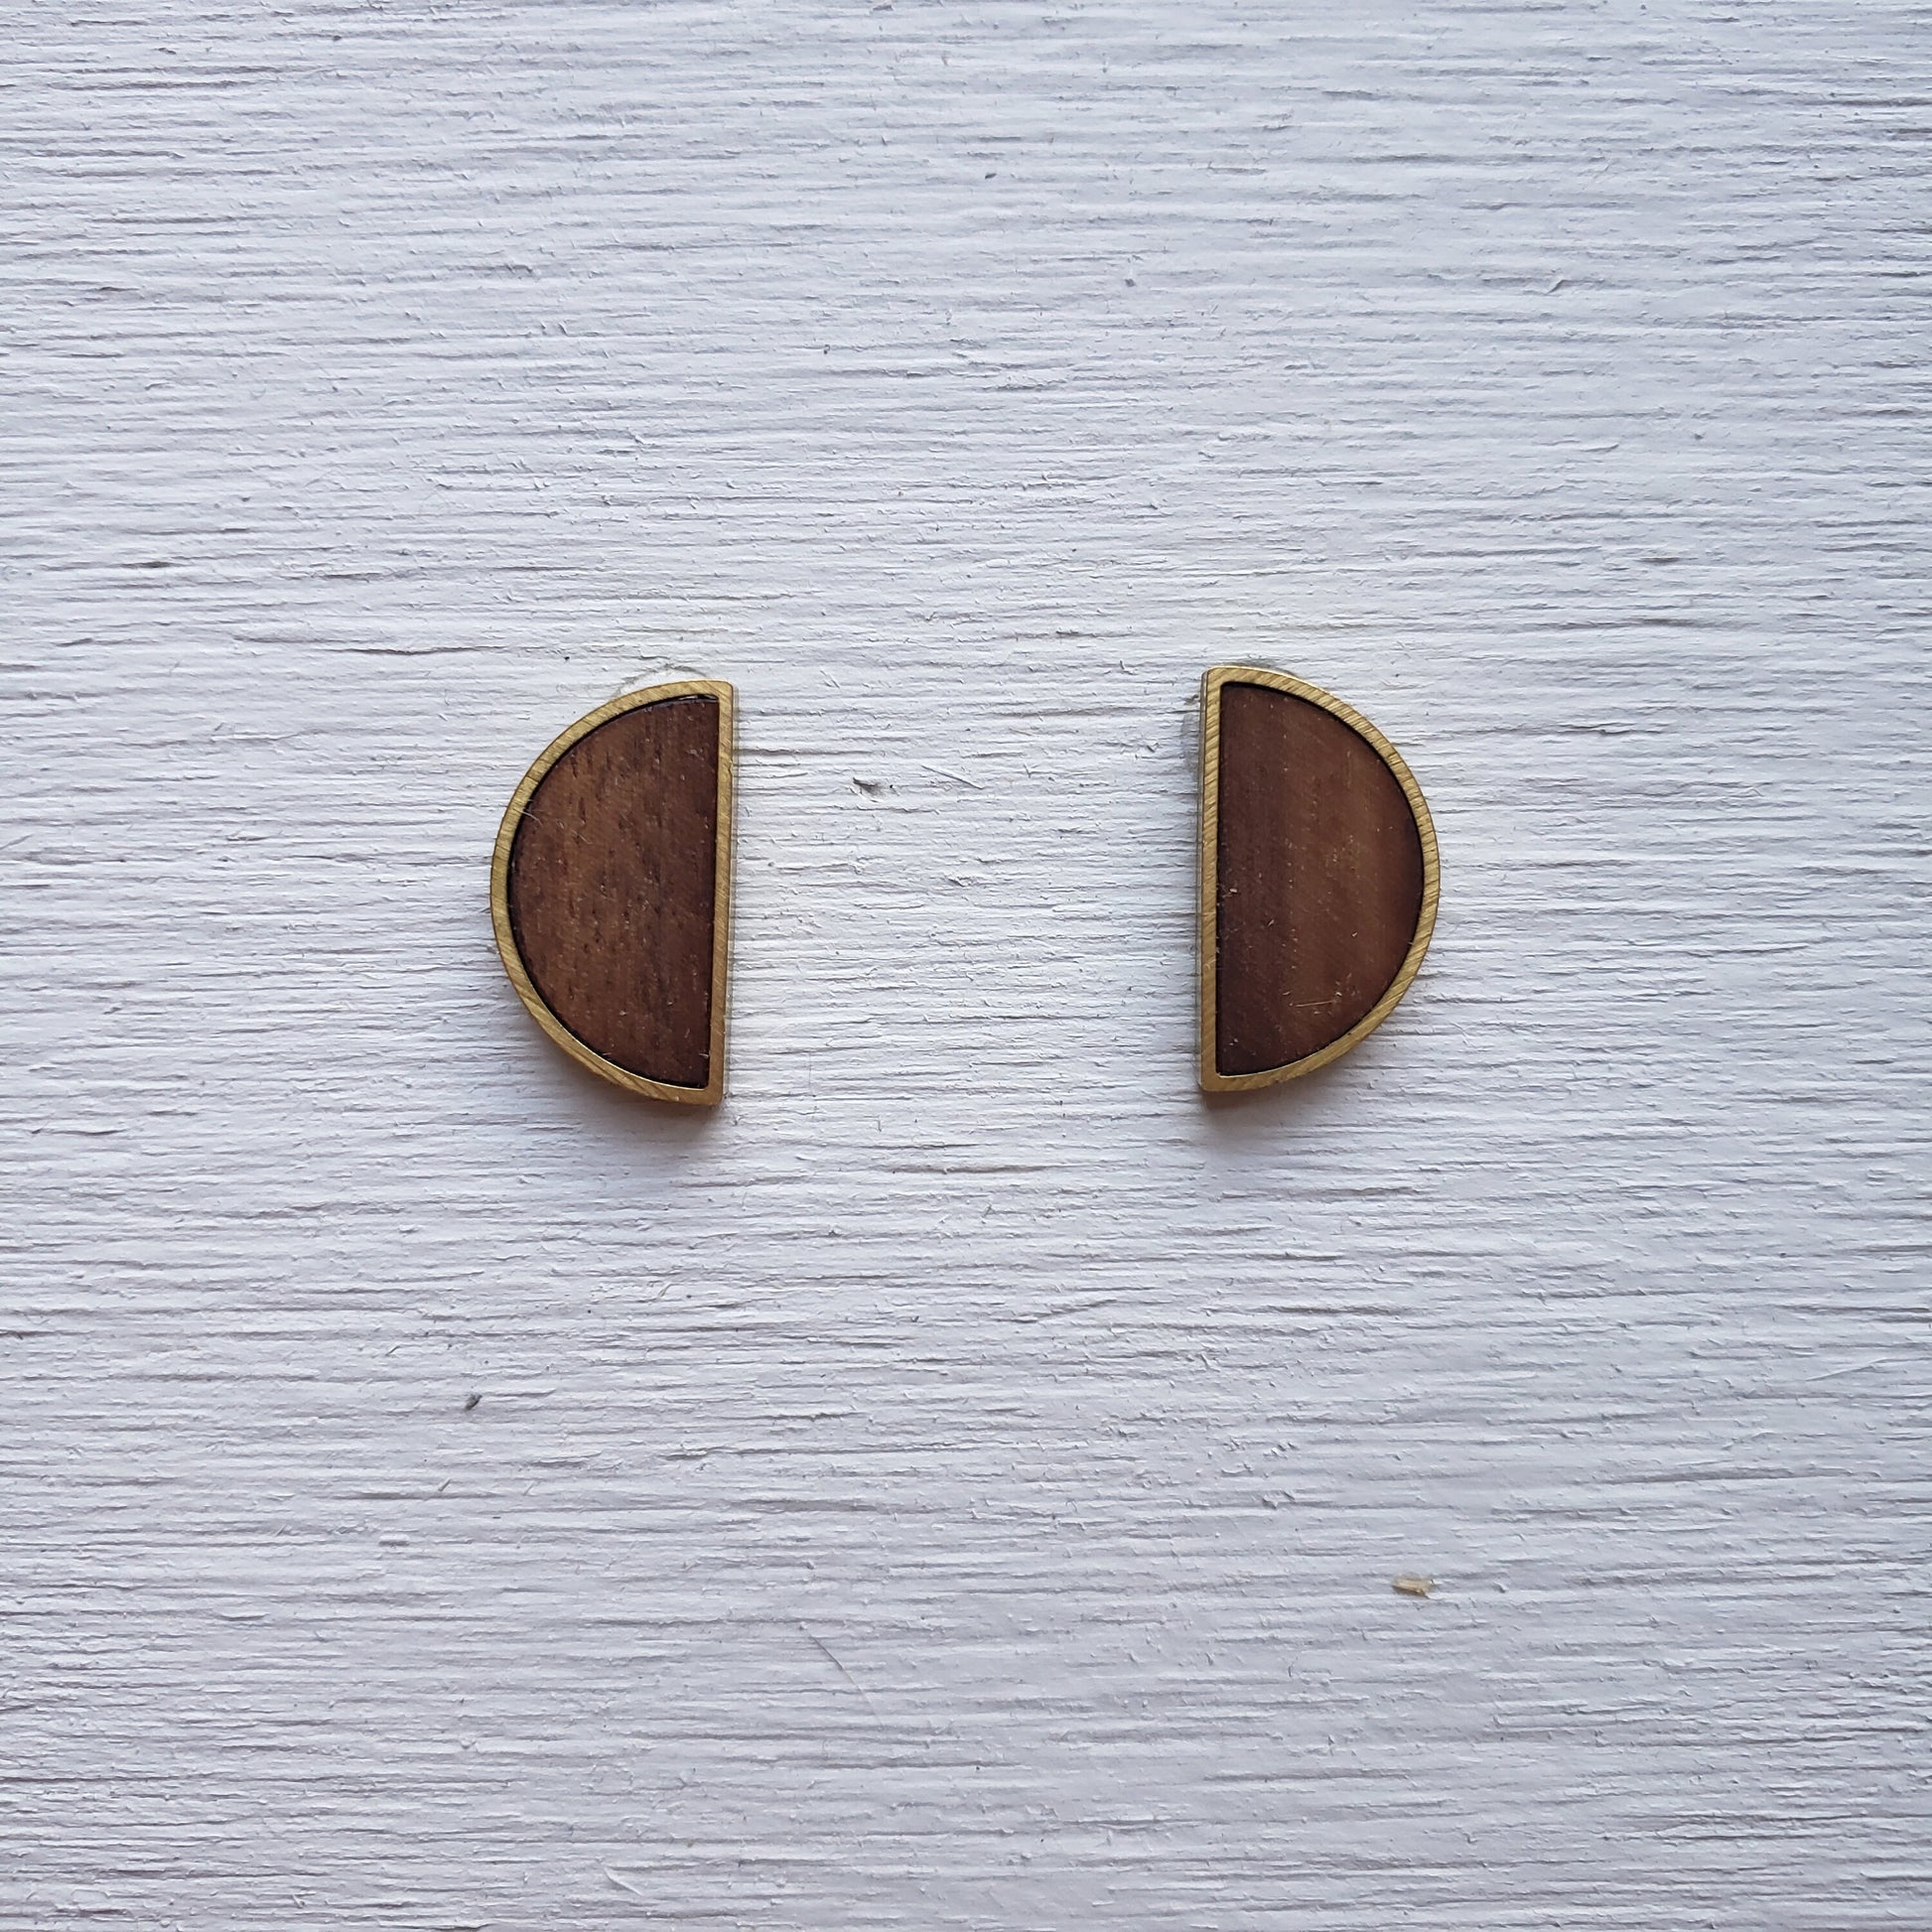 Quarter Moon Earrings - Wooden Laser Cut Earrings || Modern Geometric Jewelry